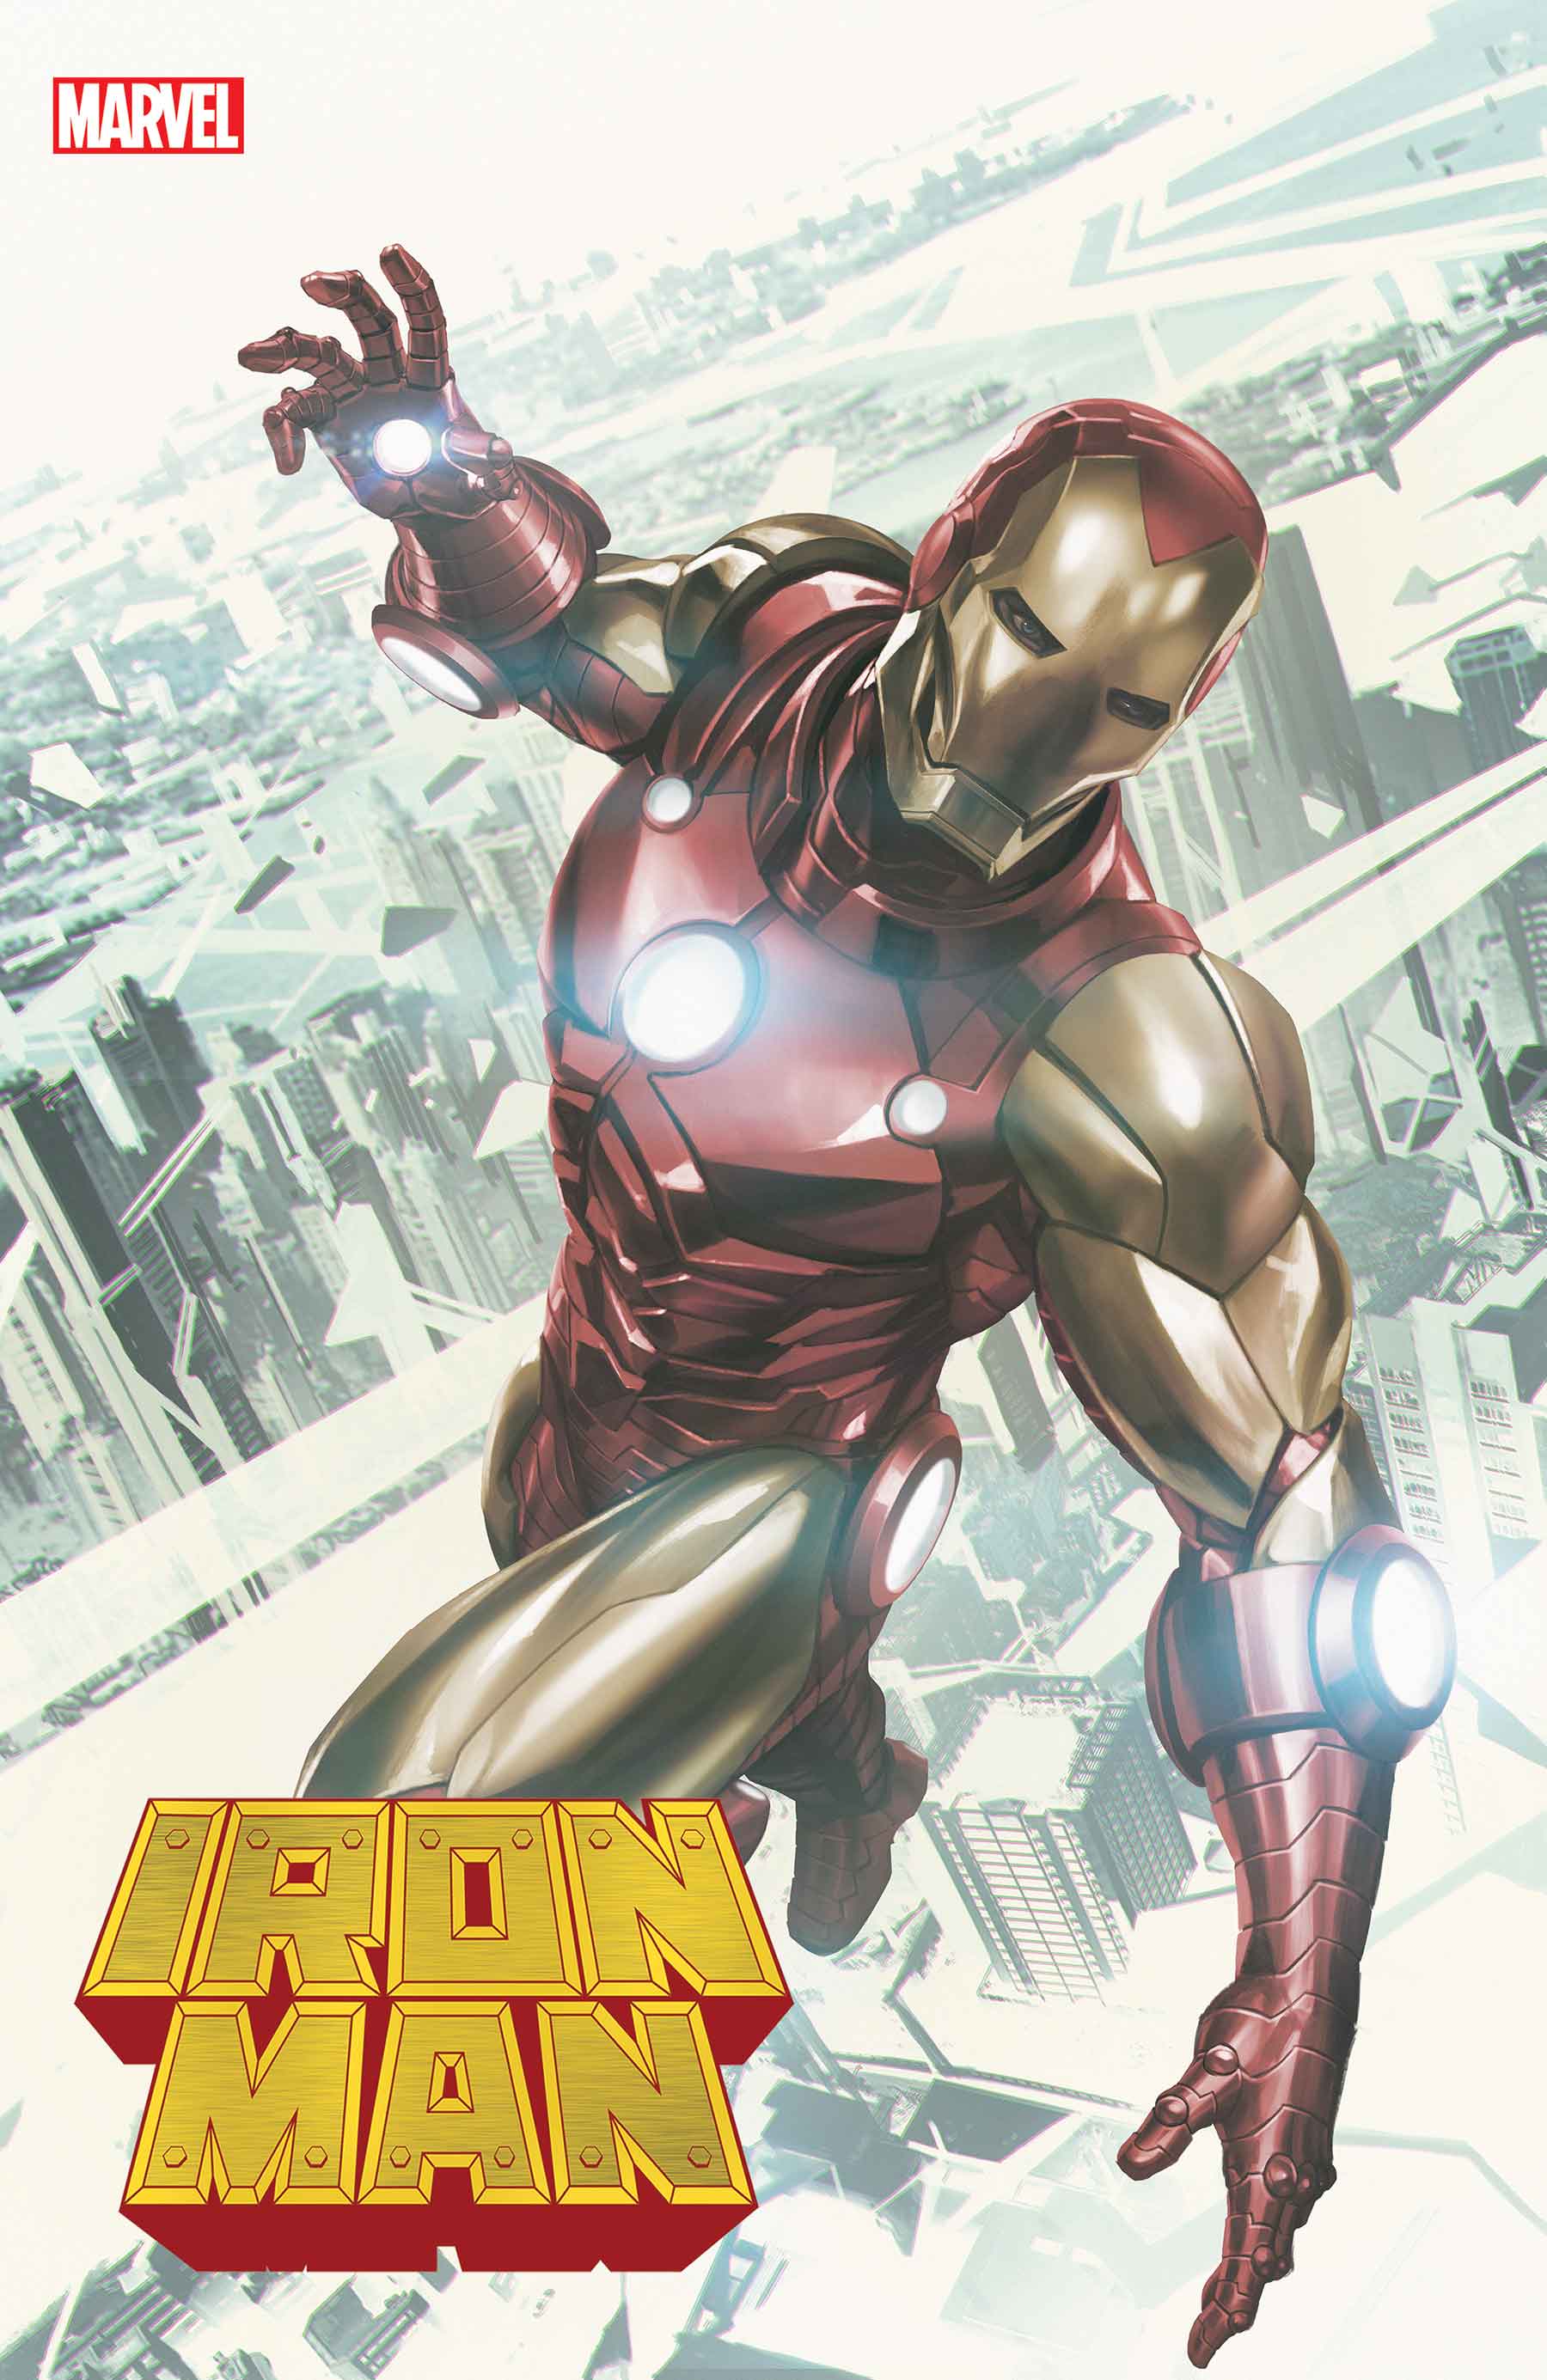 Iron Man (2020) #2 (Variant)